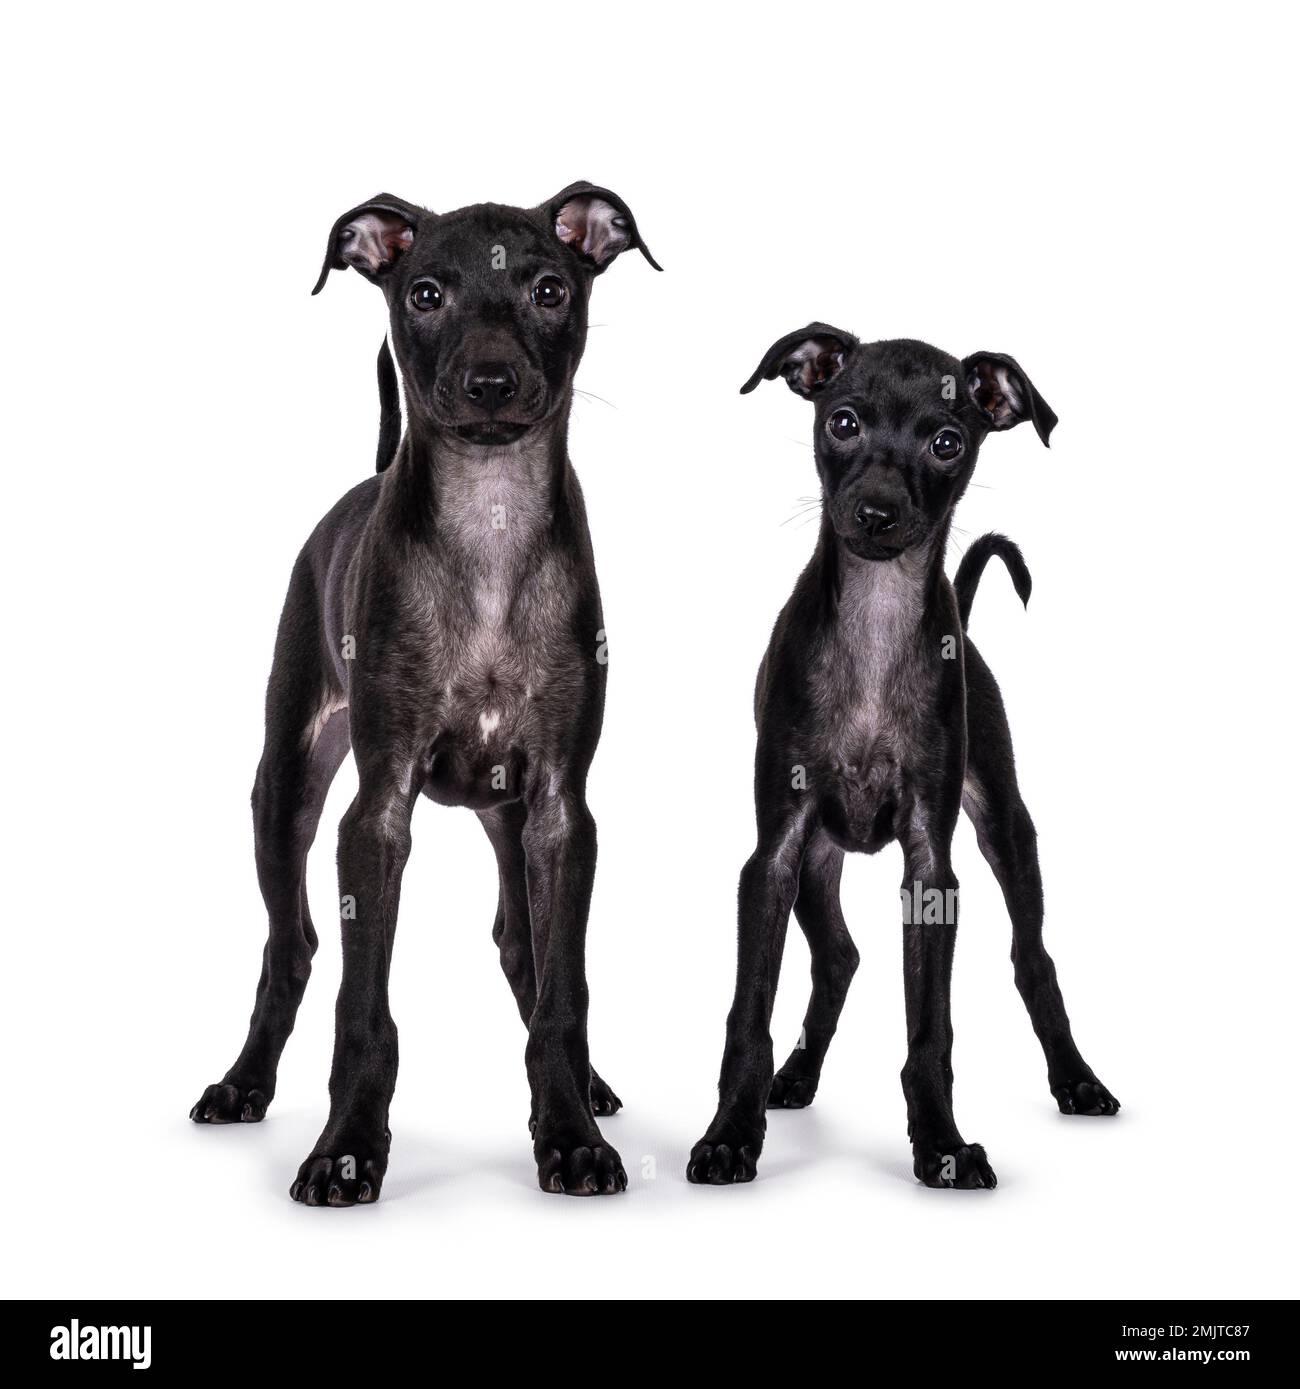 Süßes Duo von 2 italienischen Greyhound alias Italienische Sighthound Welpen, die vorne stehen. Ich schaue direkt in die Kamera. Isoliert auf weißem Hintergrund. Stockfoto